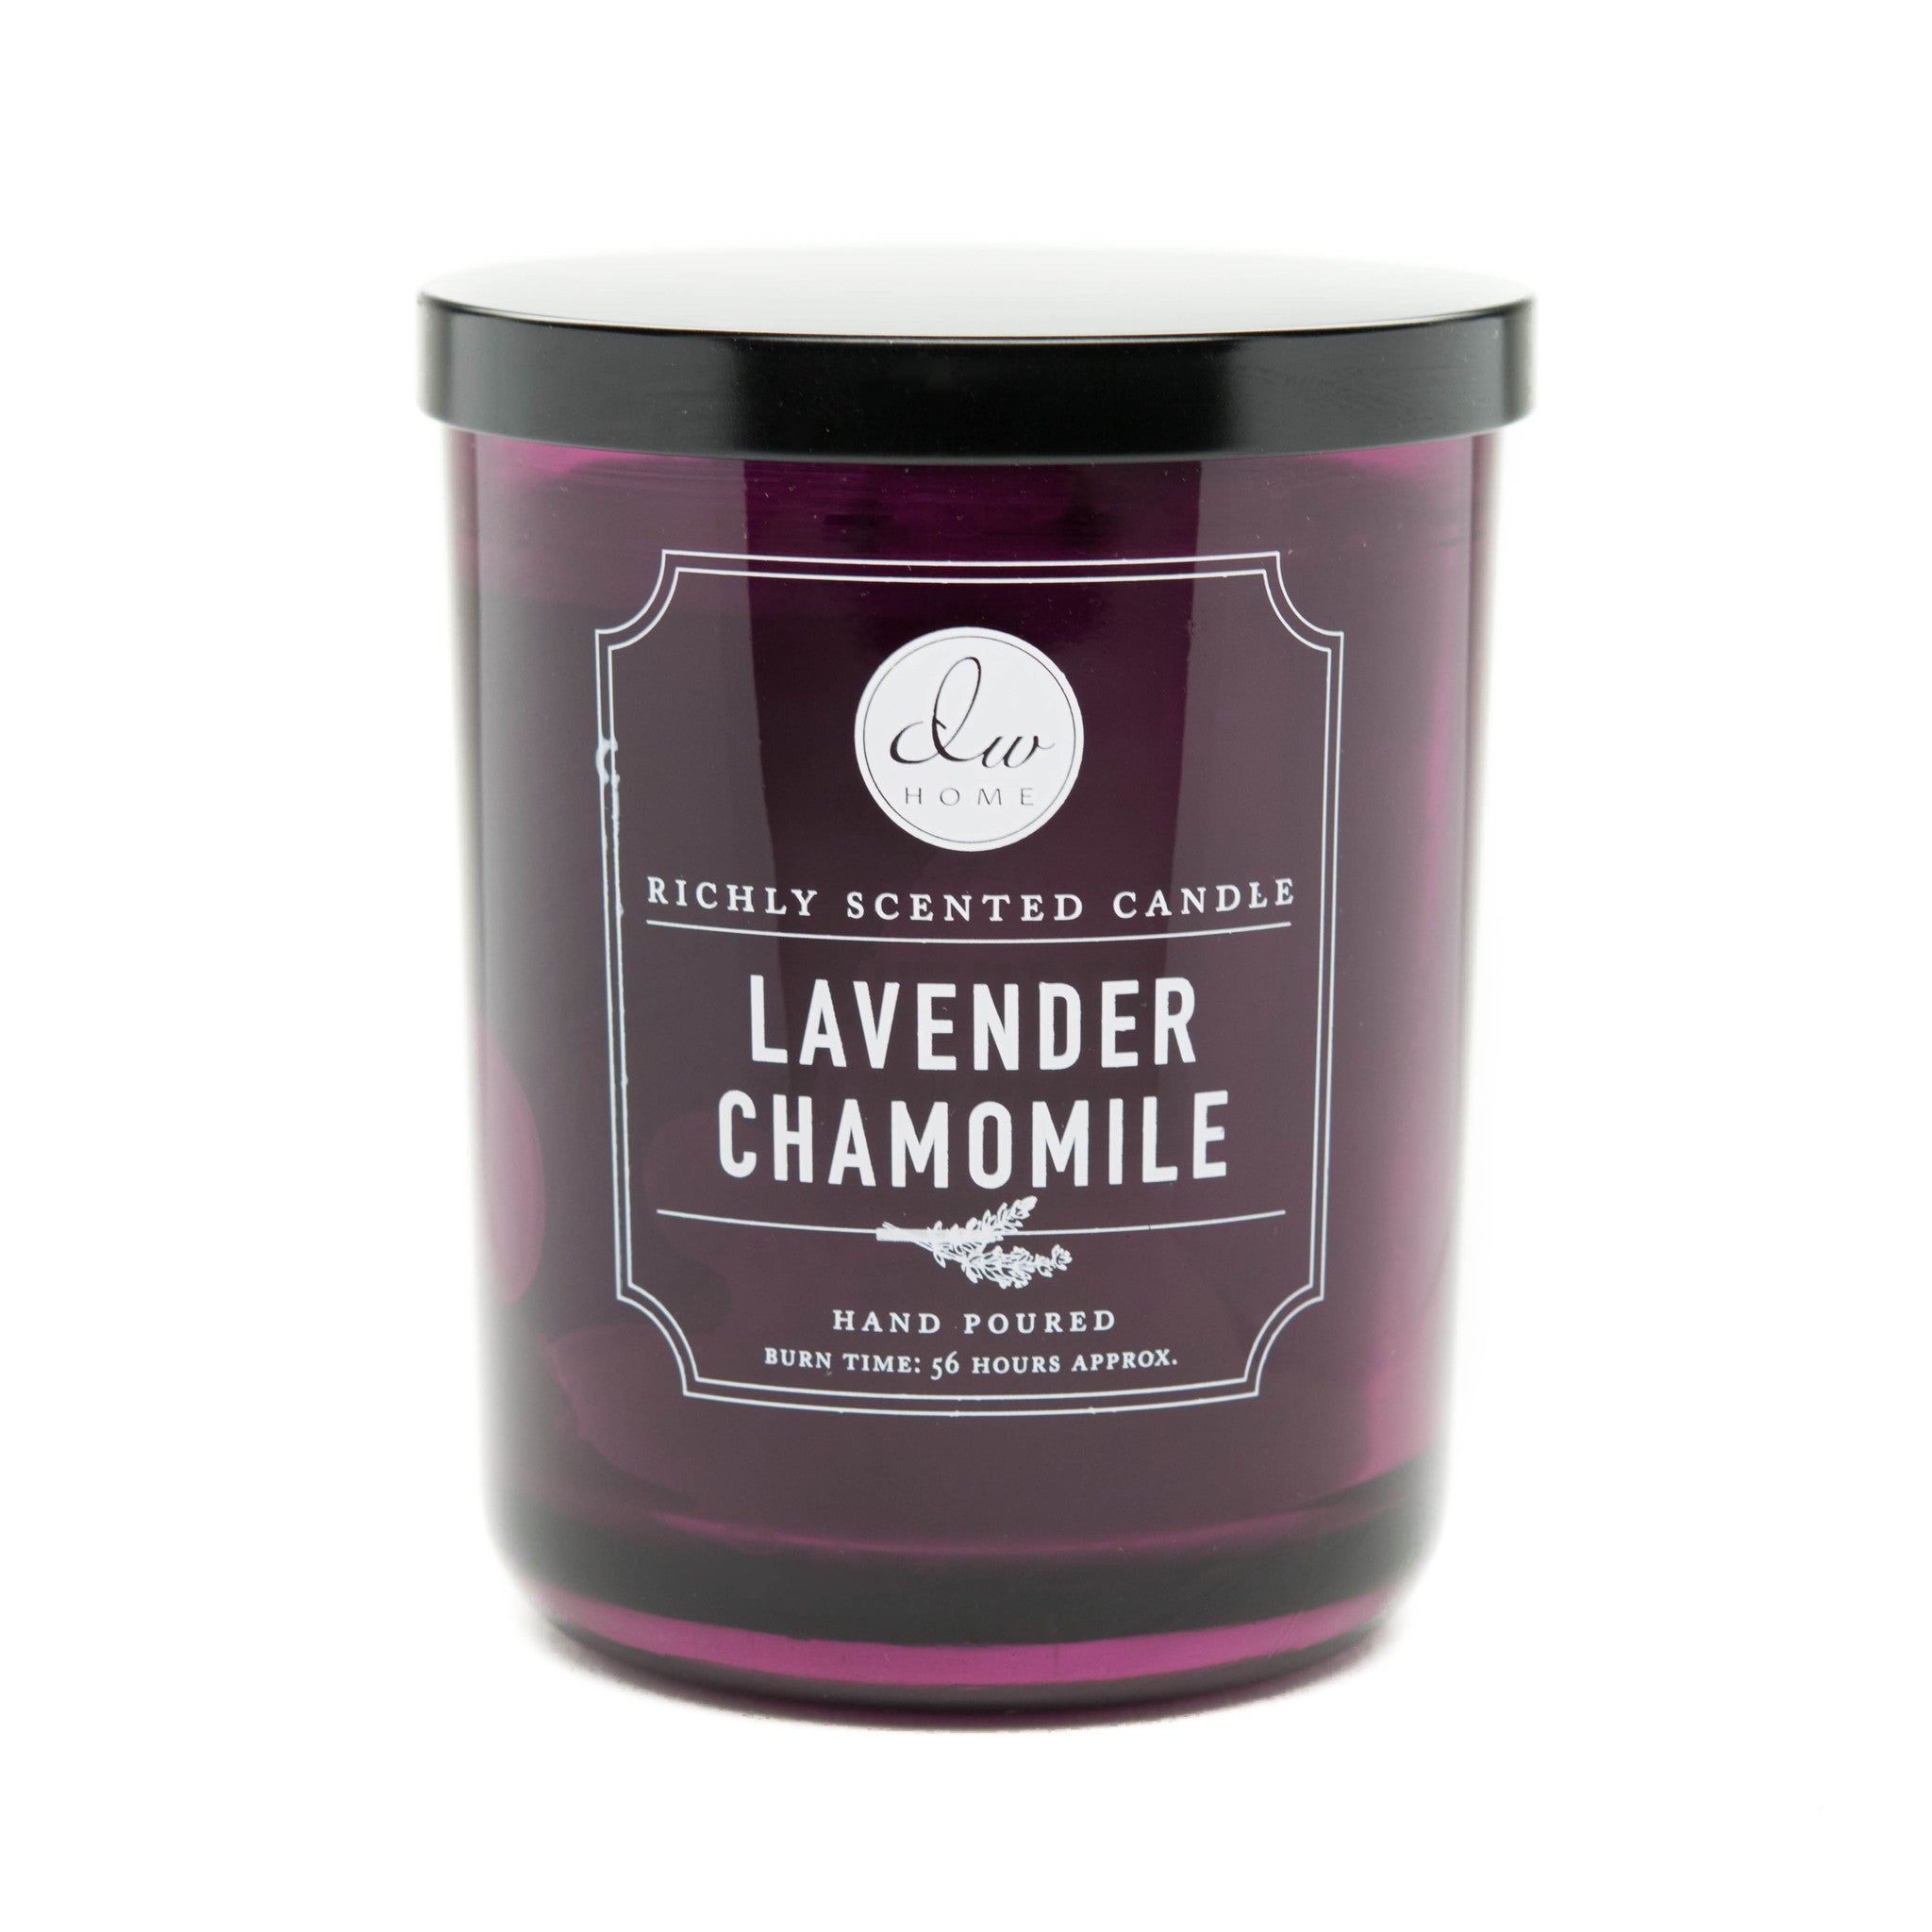 3.38 Fl Oz Lavender Essential Oil For Diffuser Humidifier - Temu